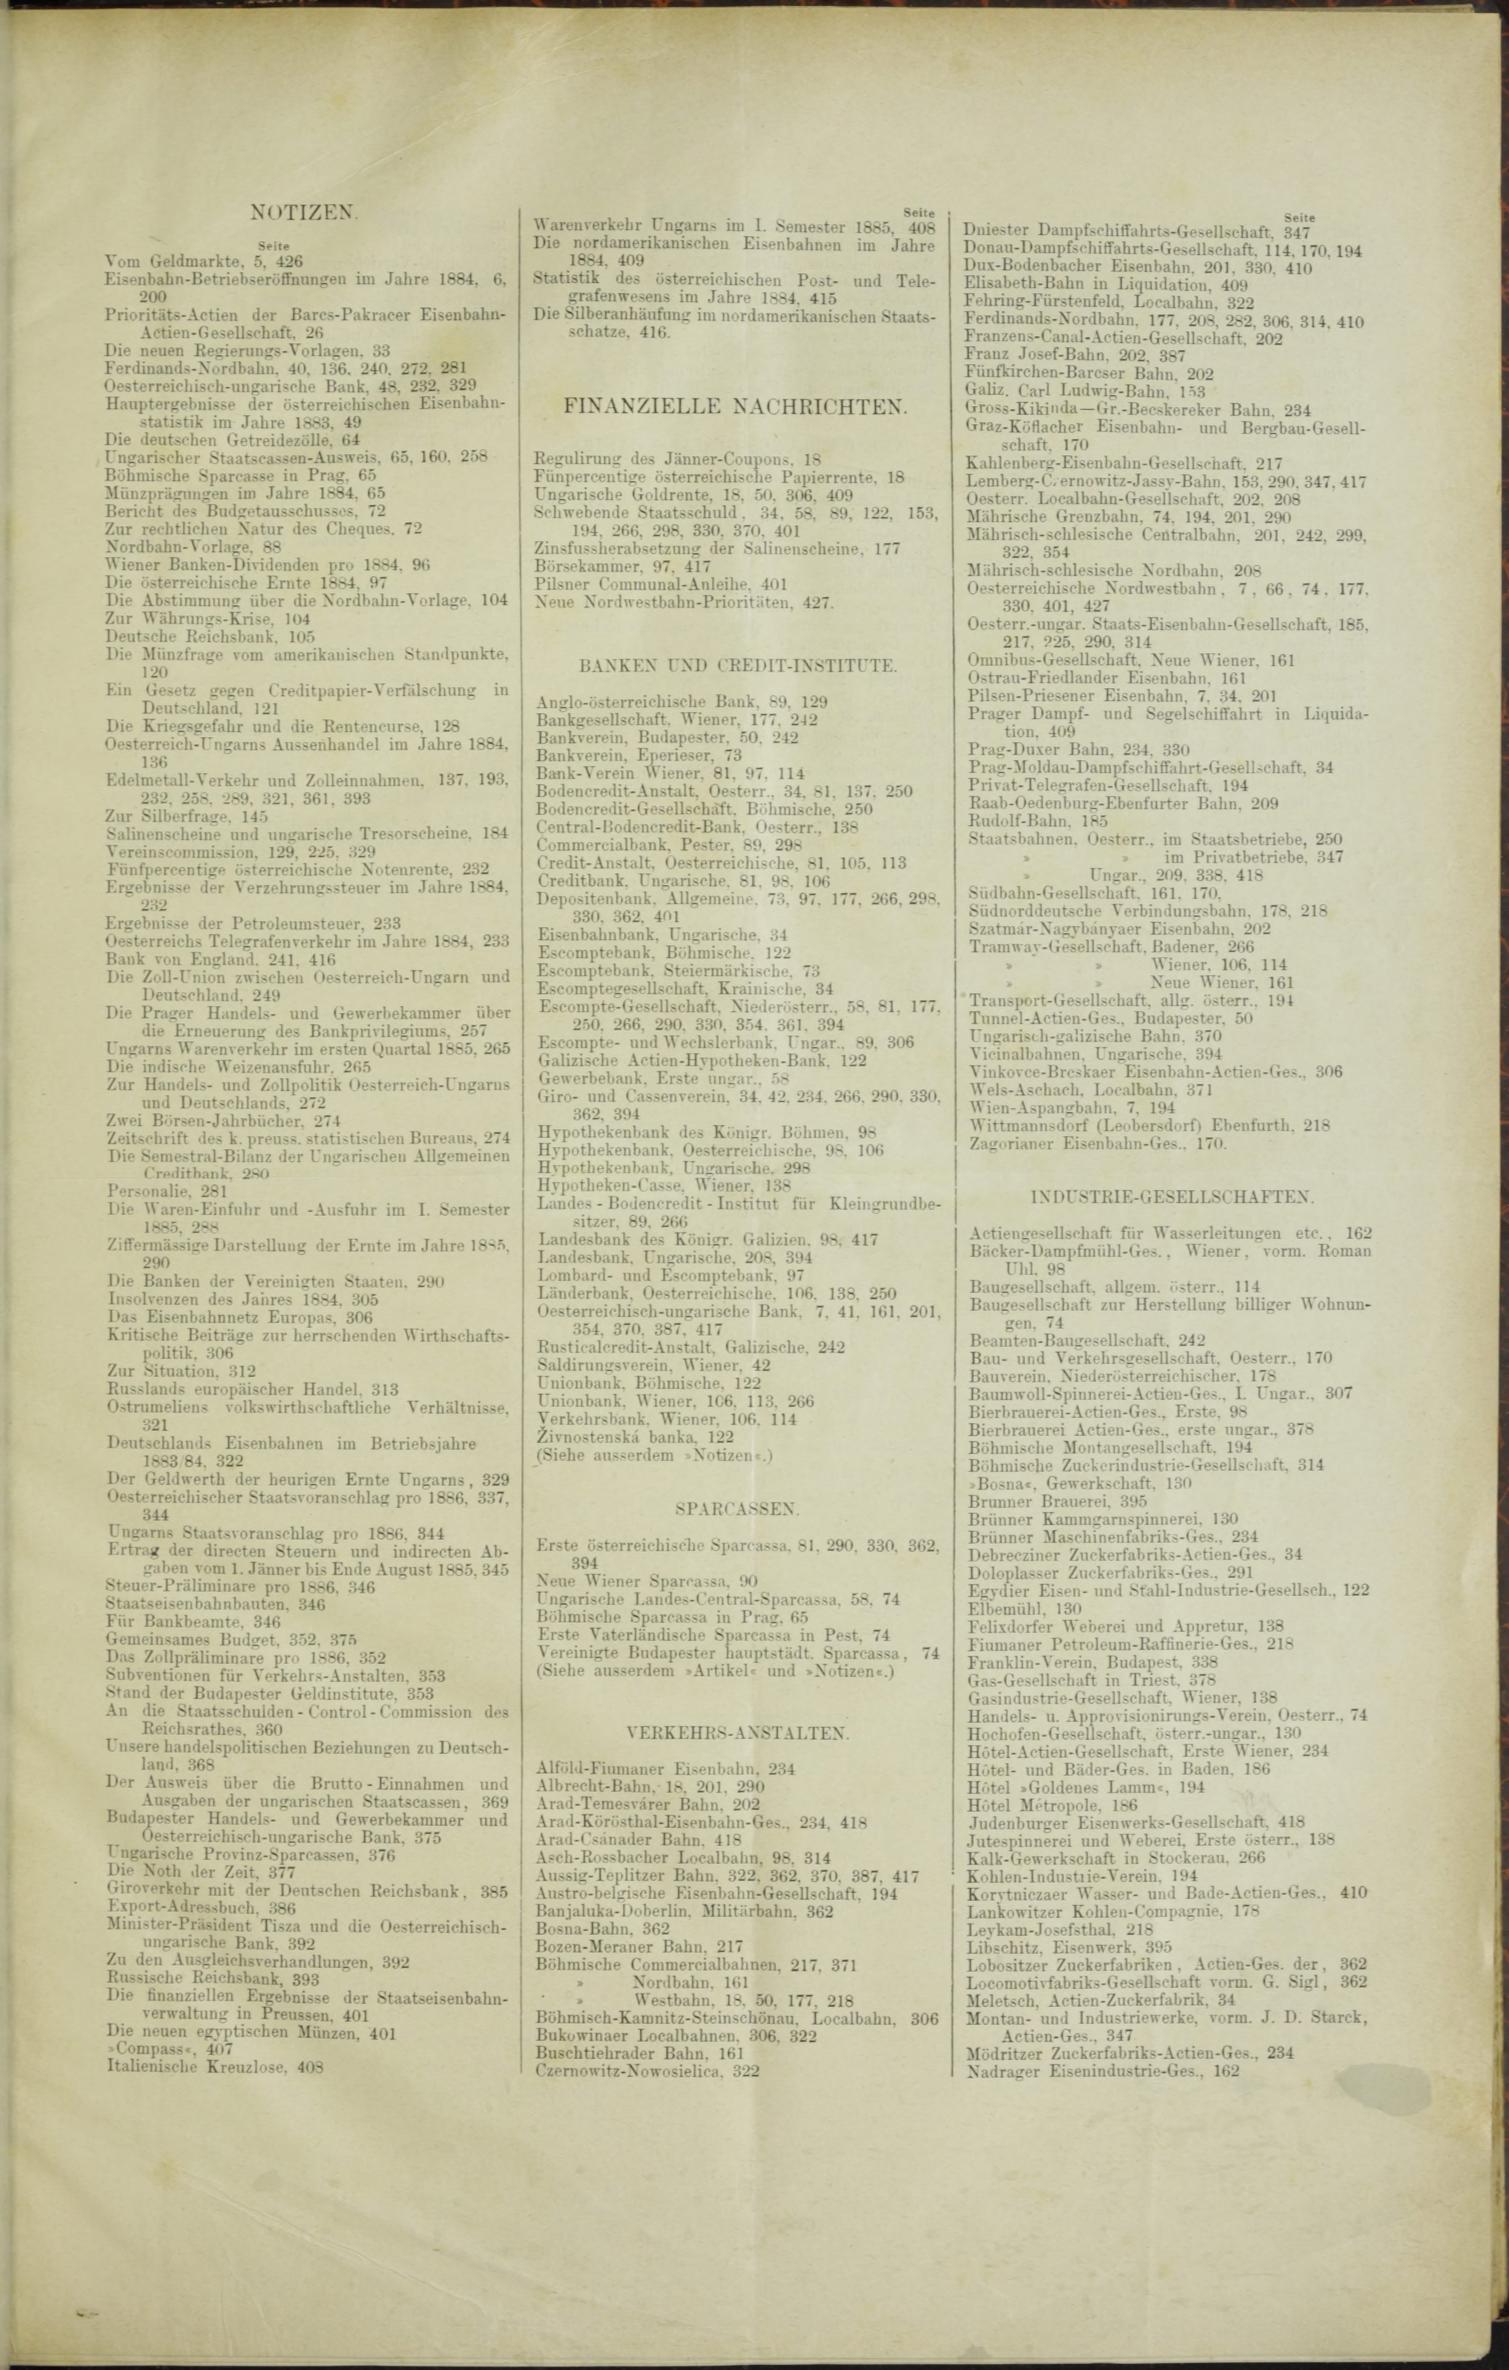 Der Tresor 25.06.1885 - Seite 11